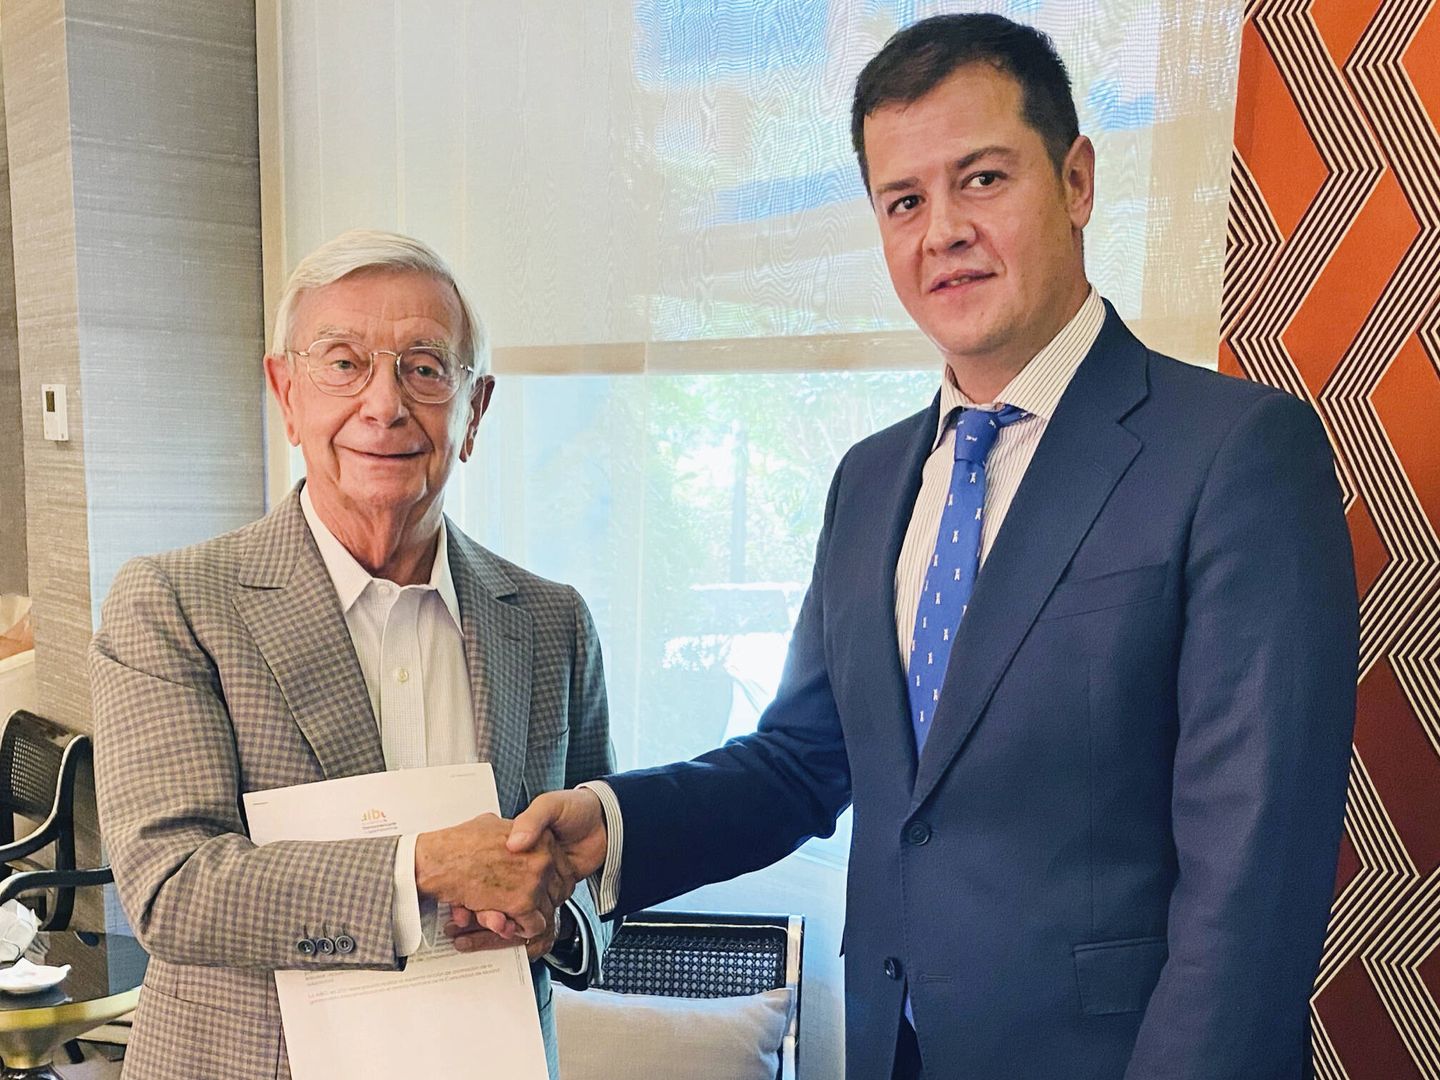 Rafael Ansón con Luis Martín, director general de Turismo de la Comunidad de Madrid, firmando el acuerdo para desarrollar el proyecto “Madrid, de pueblo a pueblo”. (Academia Iberoamericana de Gastronomía)